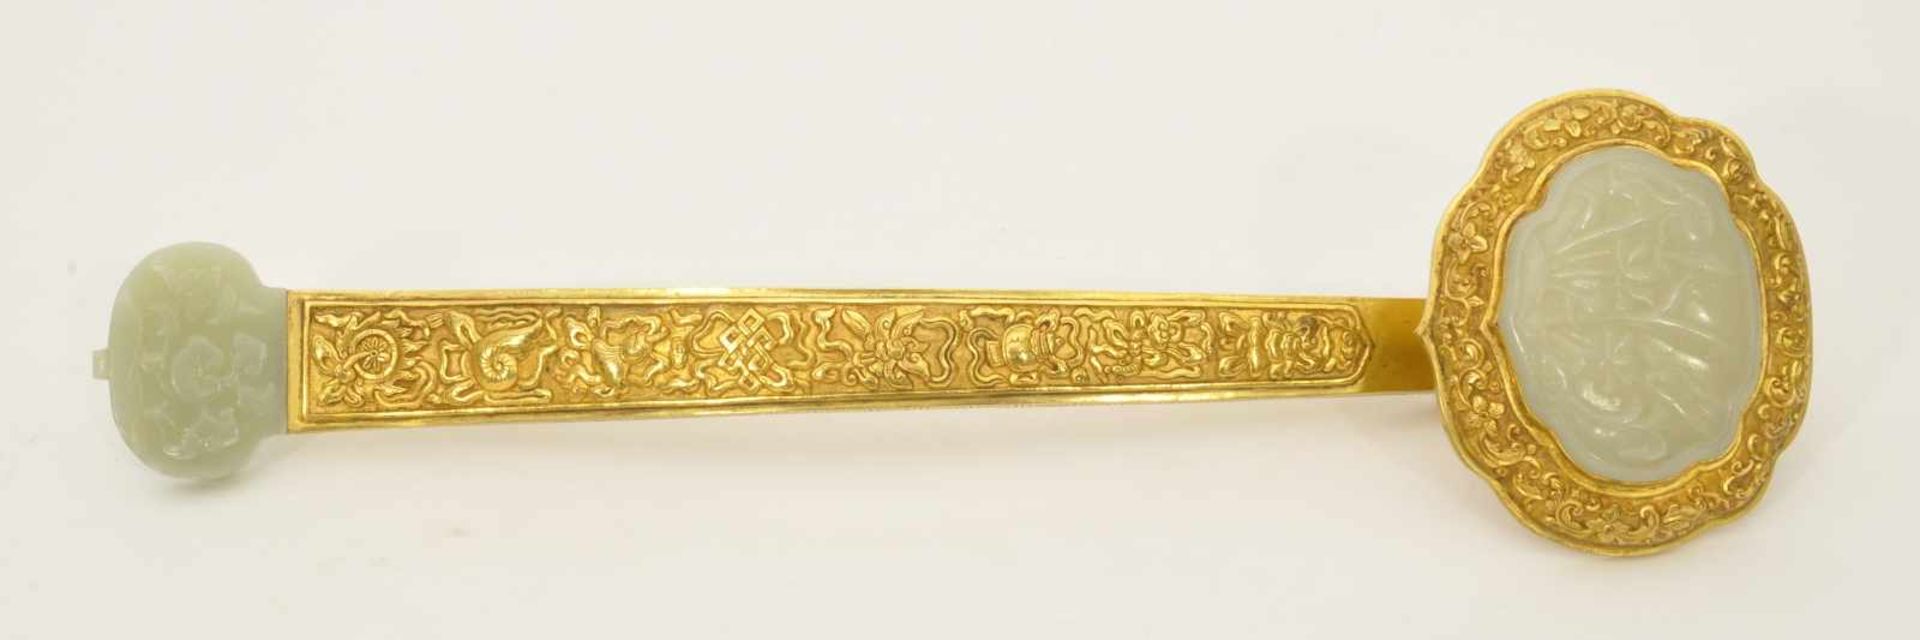 Ruyi - Zepter China, ganzflächig ziseliert, vergoldet, wolkenförmiges Oberteil mit Einlage aus Jade,